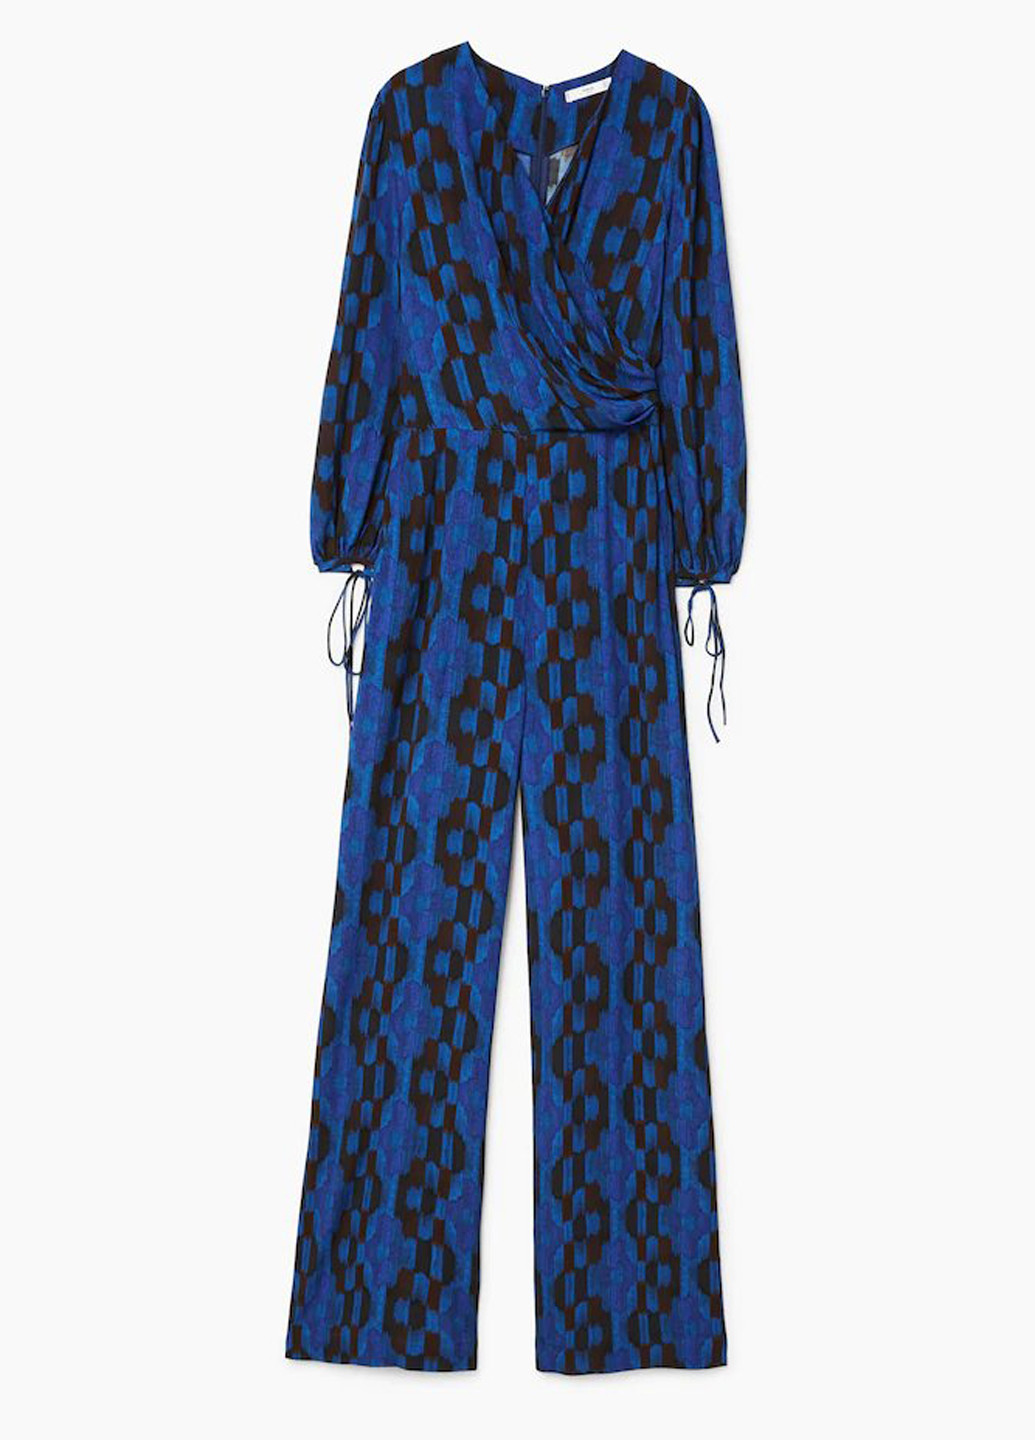 Комбинезон Mango комбинезон-брюки абстрактный синий кэжуал вискоза